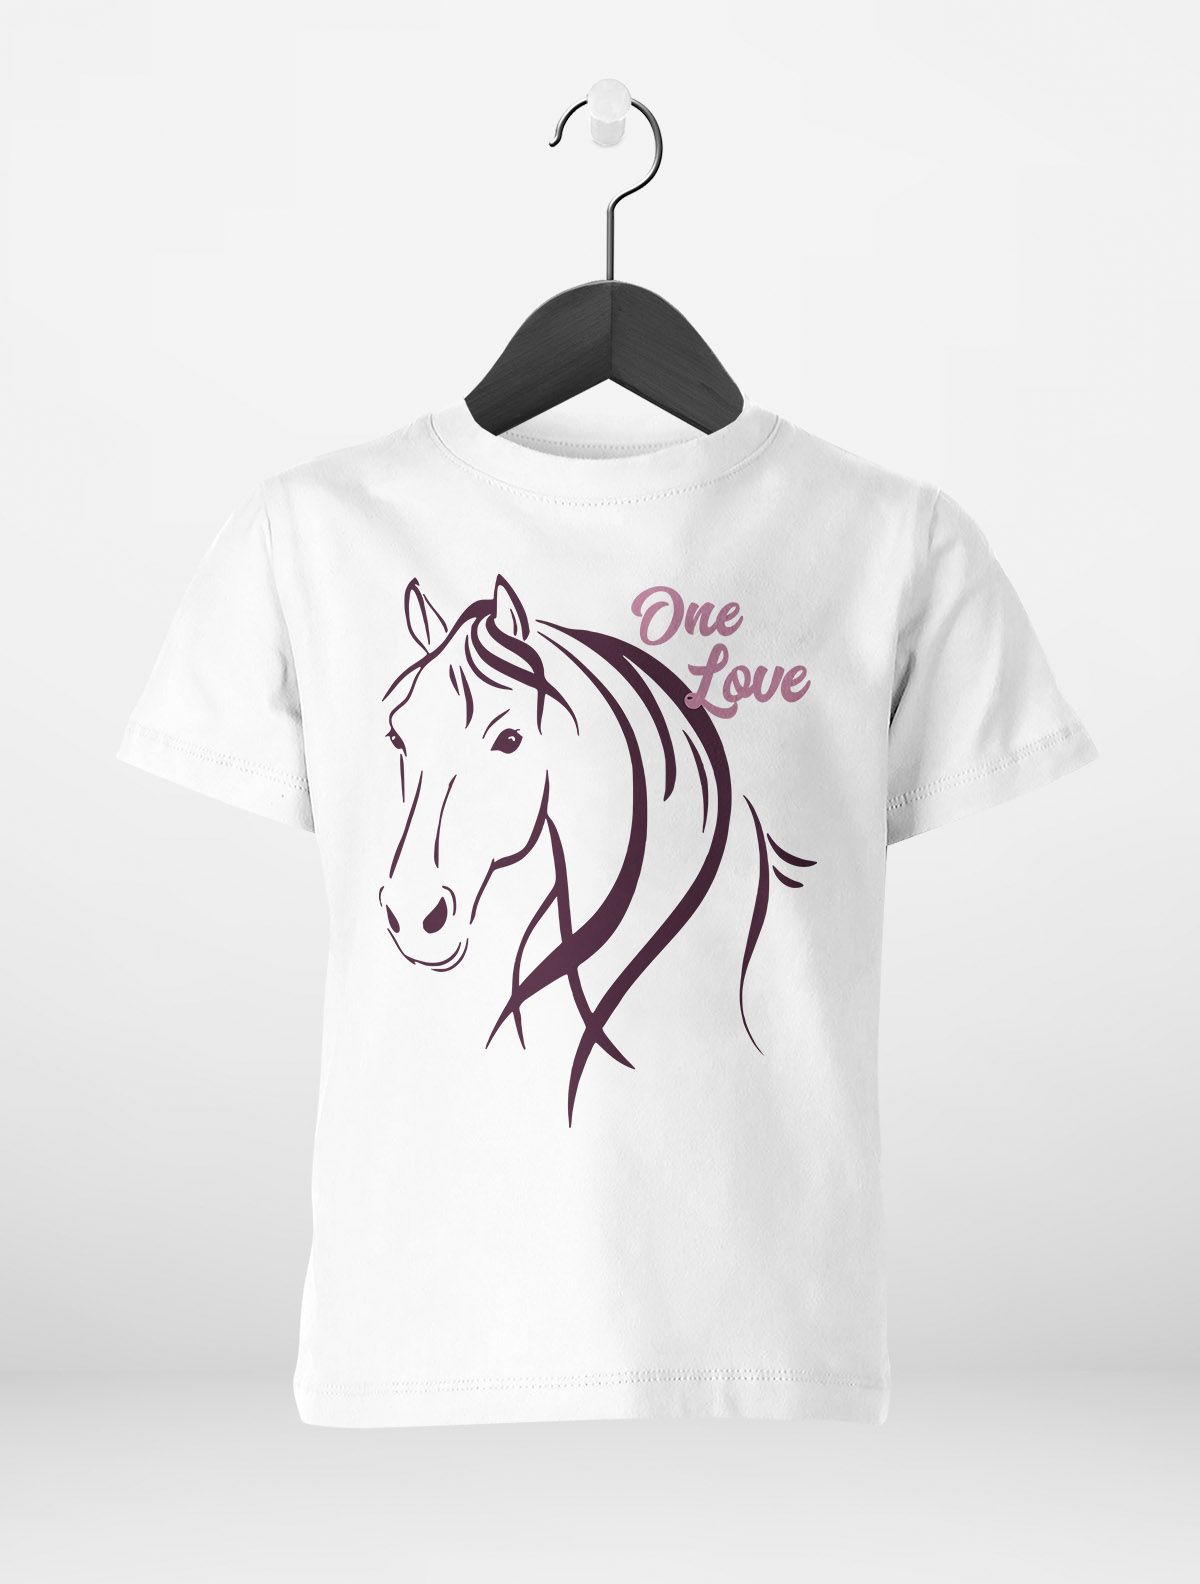 Pferde-Motiv Kinder für Geschenk Pferdeliebhaber T-Shirt Reiten | eBay Mädchen Mädchen